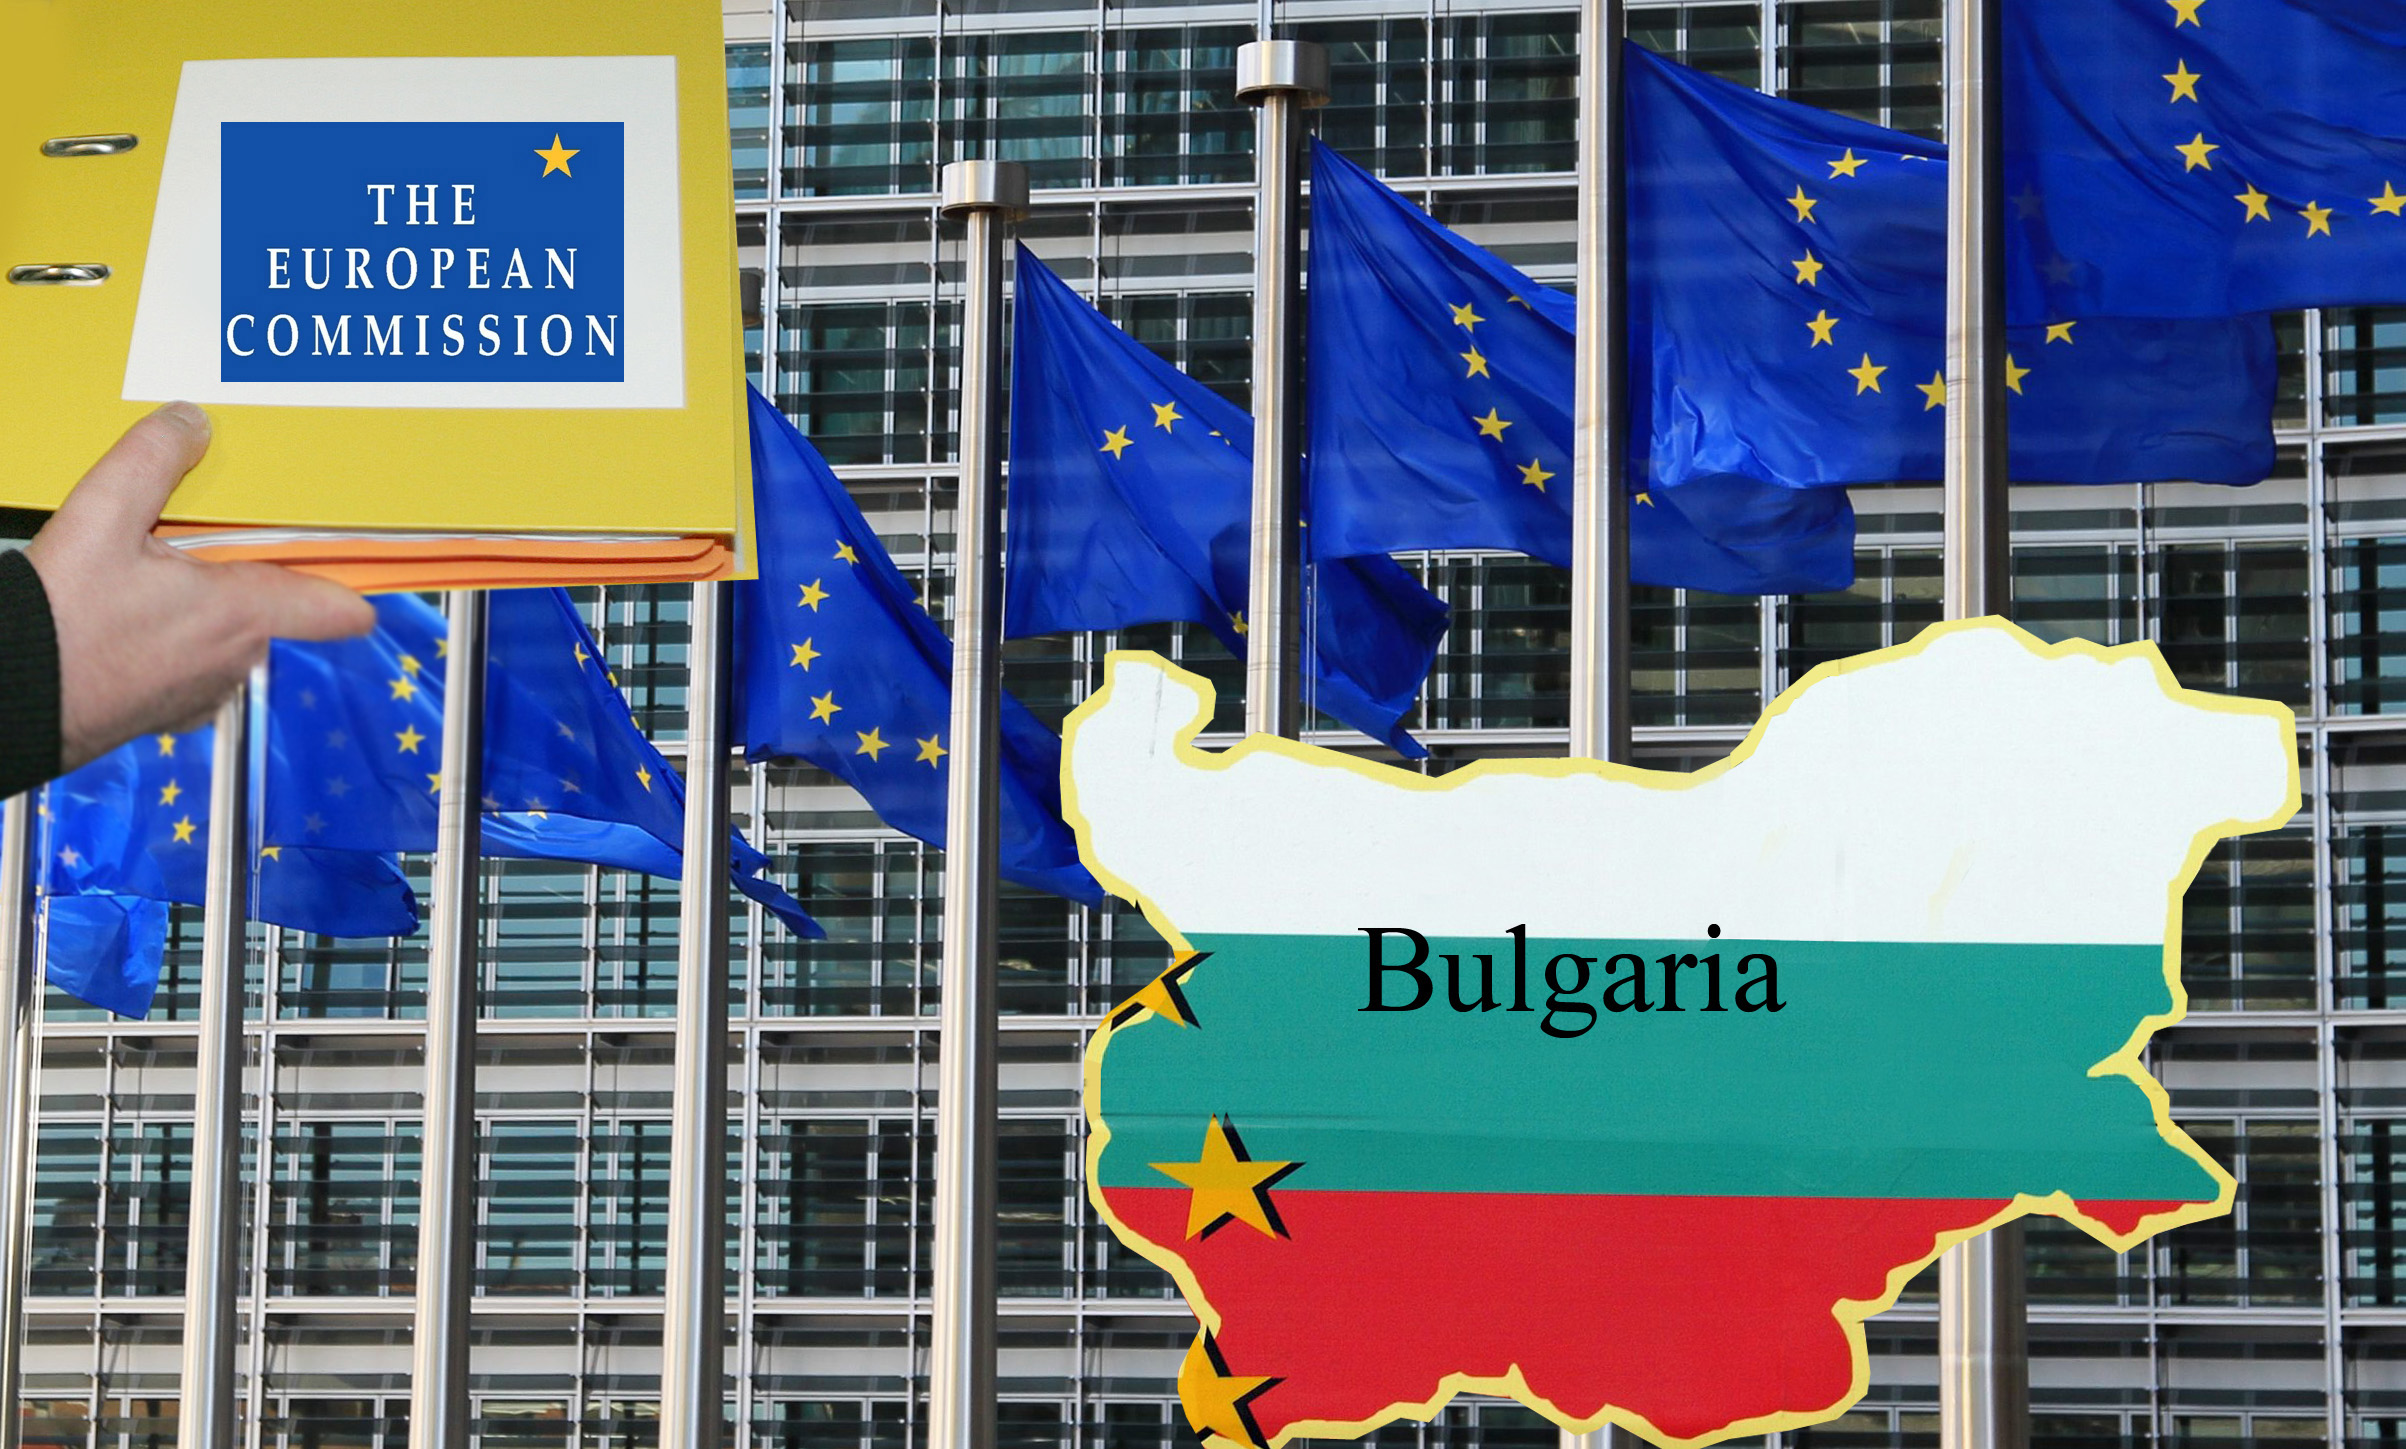 ЕК: Нямаме официално предложение от България за еврокомисар, научихме имената от новините